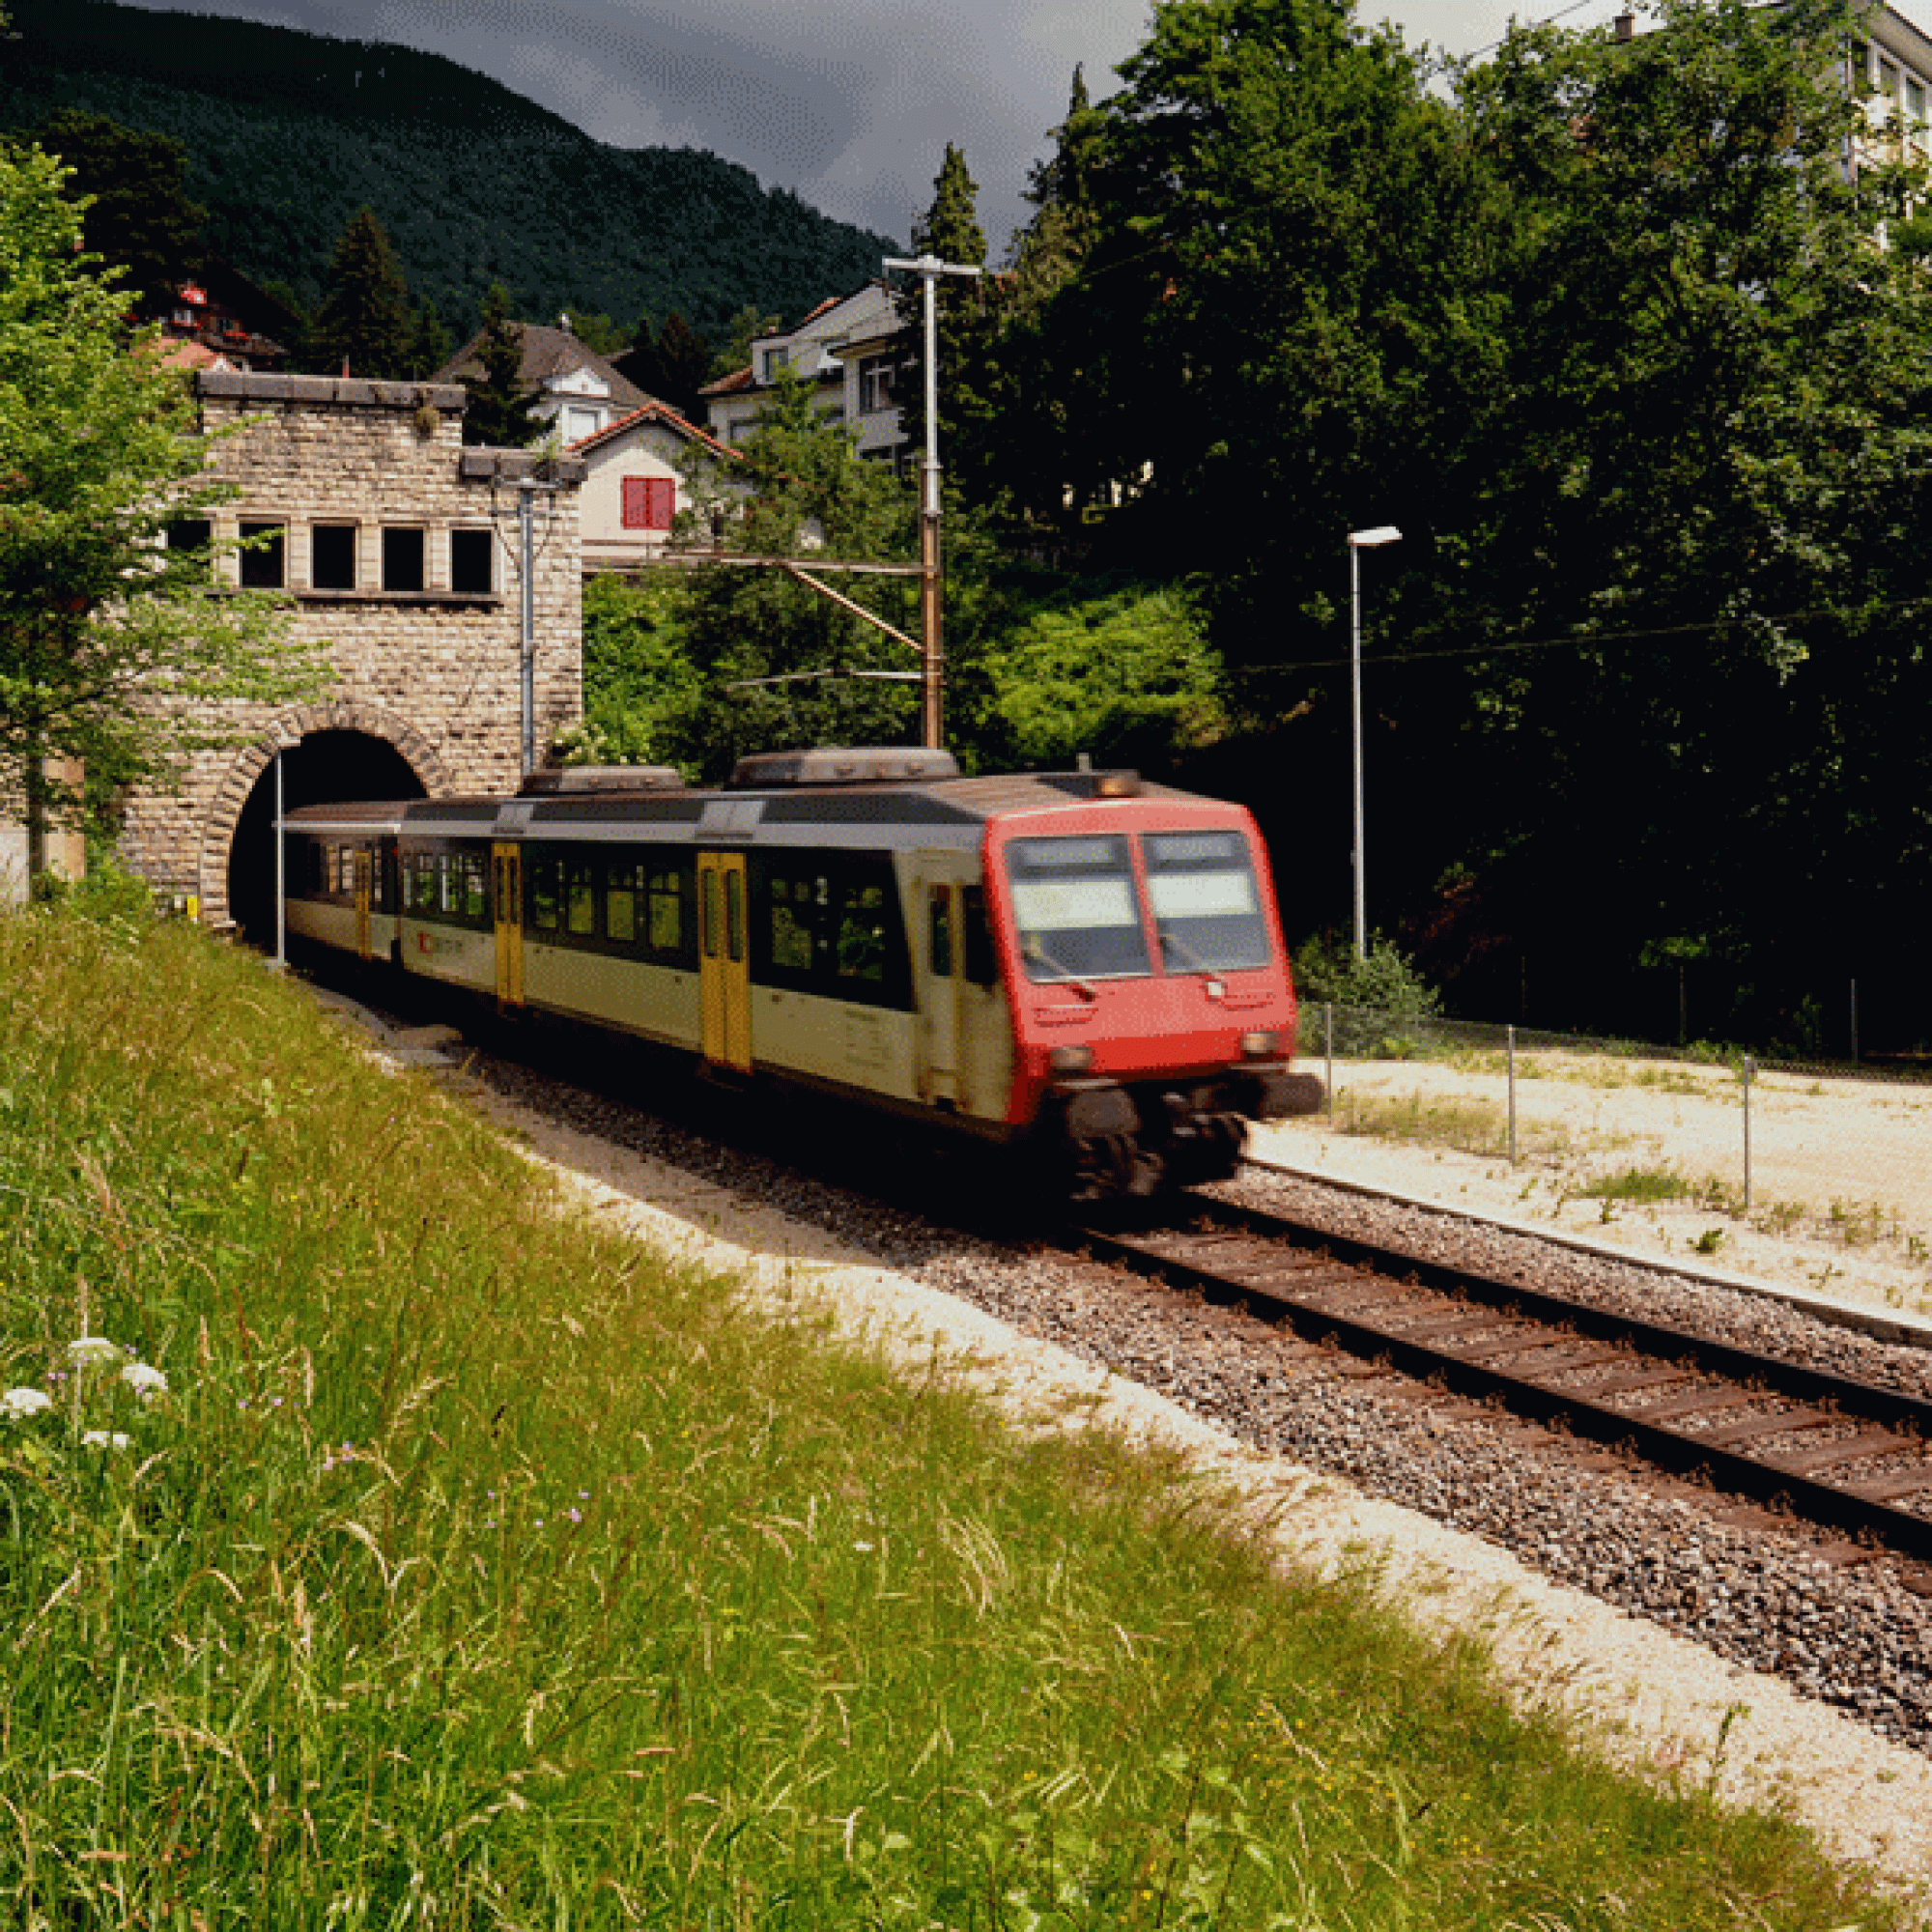 Nächster Halt Grenchen Nord: Ein Zug der SBB verlässt den Tunnel. (Bild: Chriusha CC BY-SA 3.0)